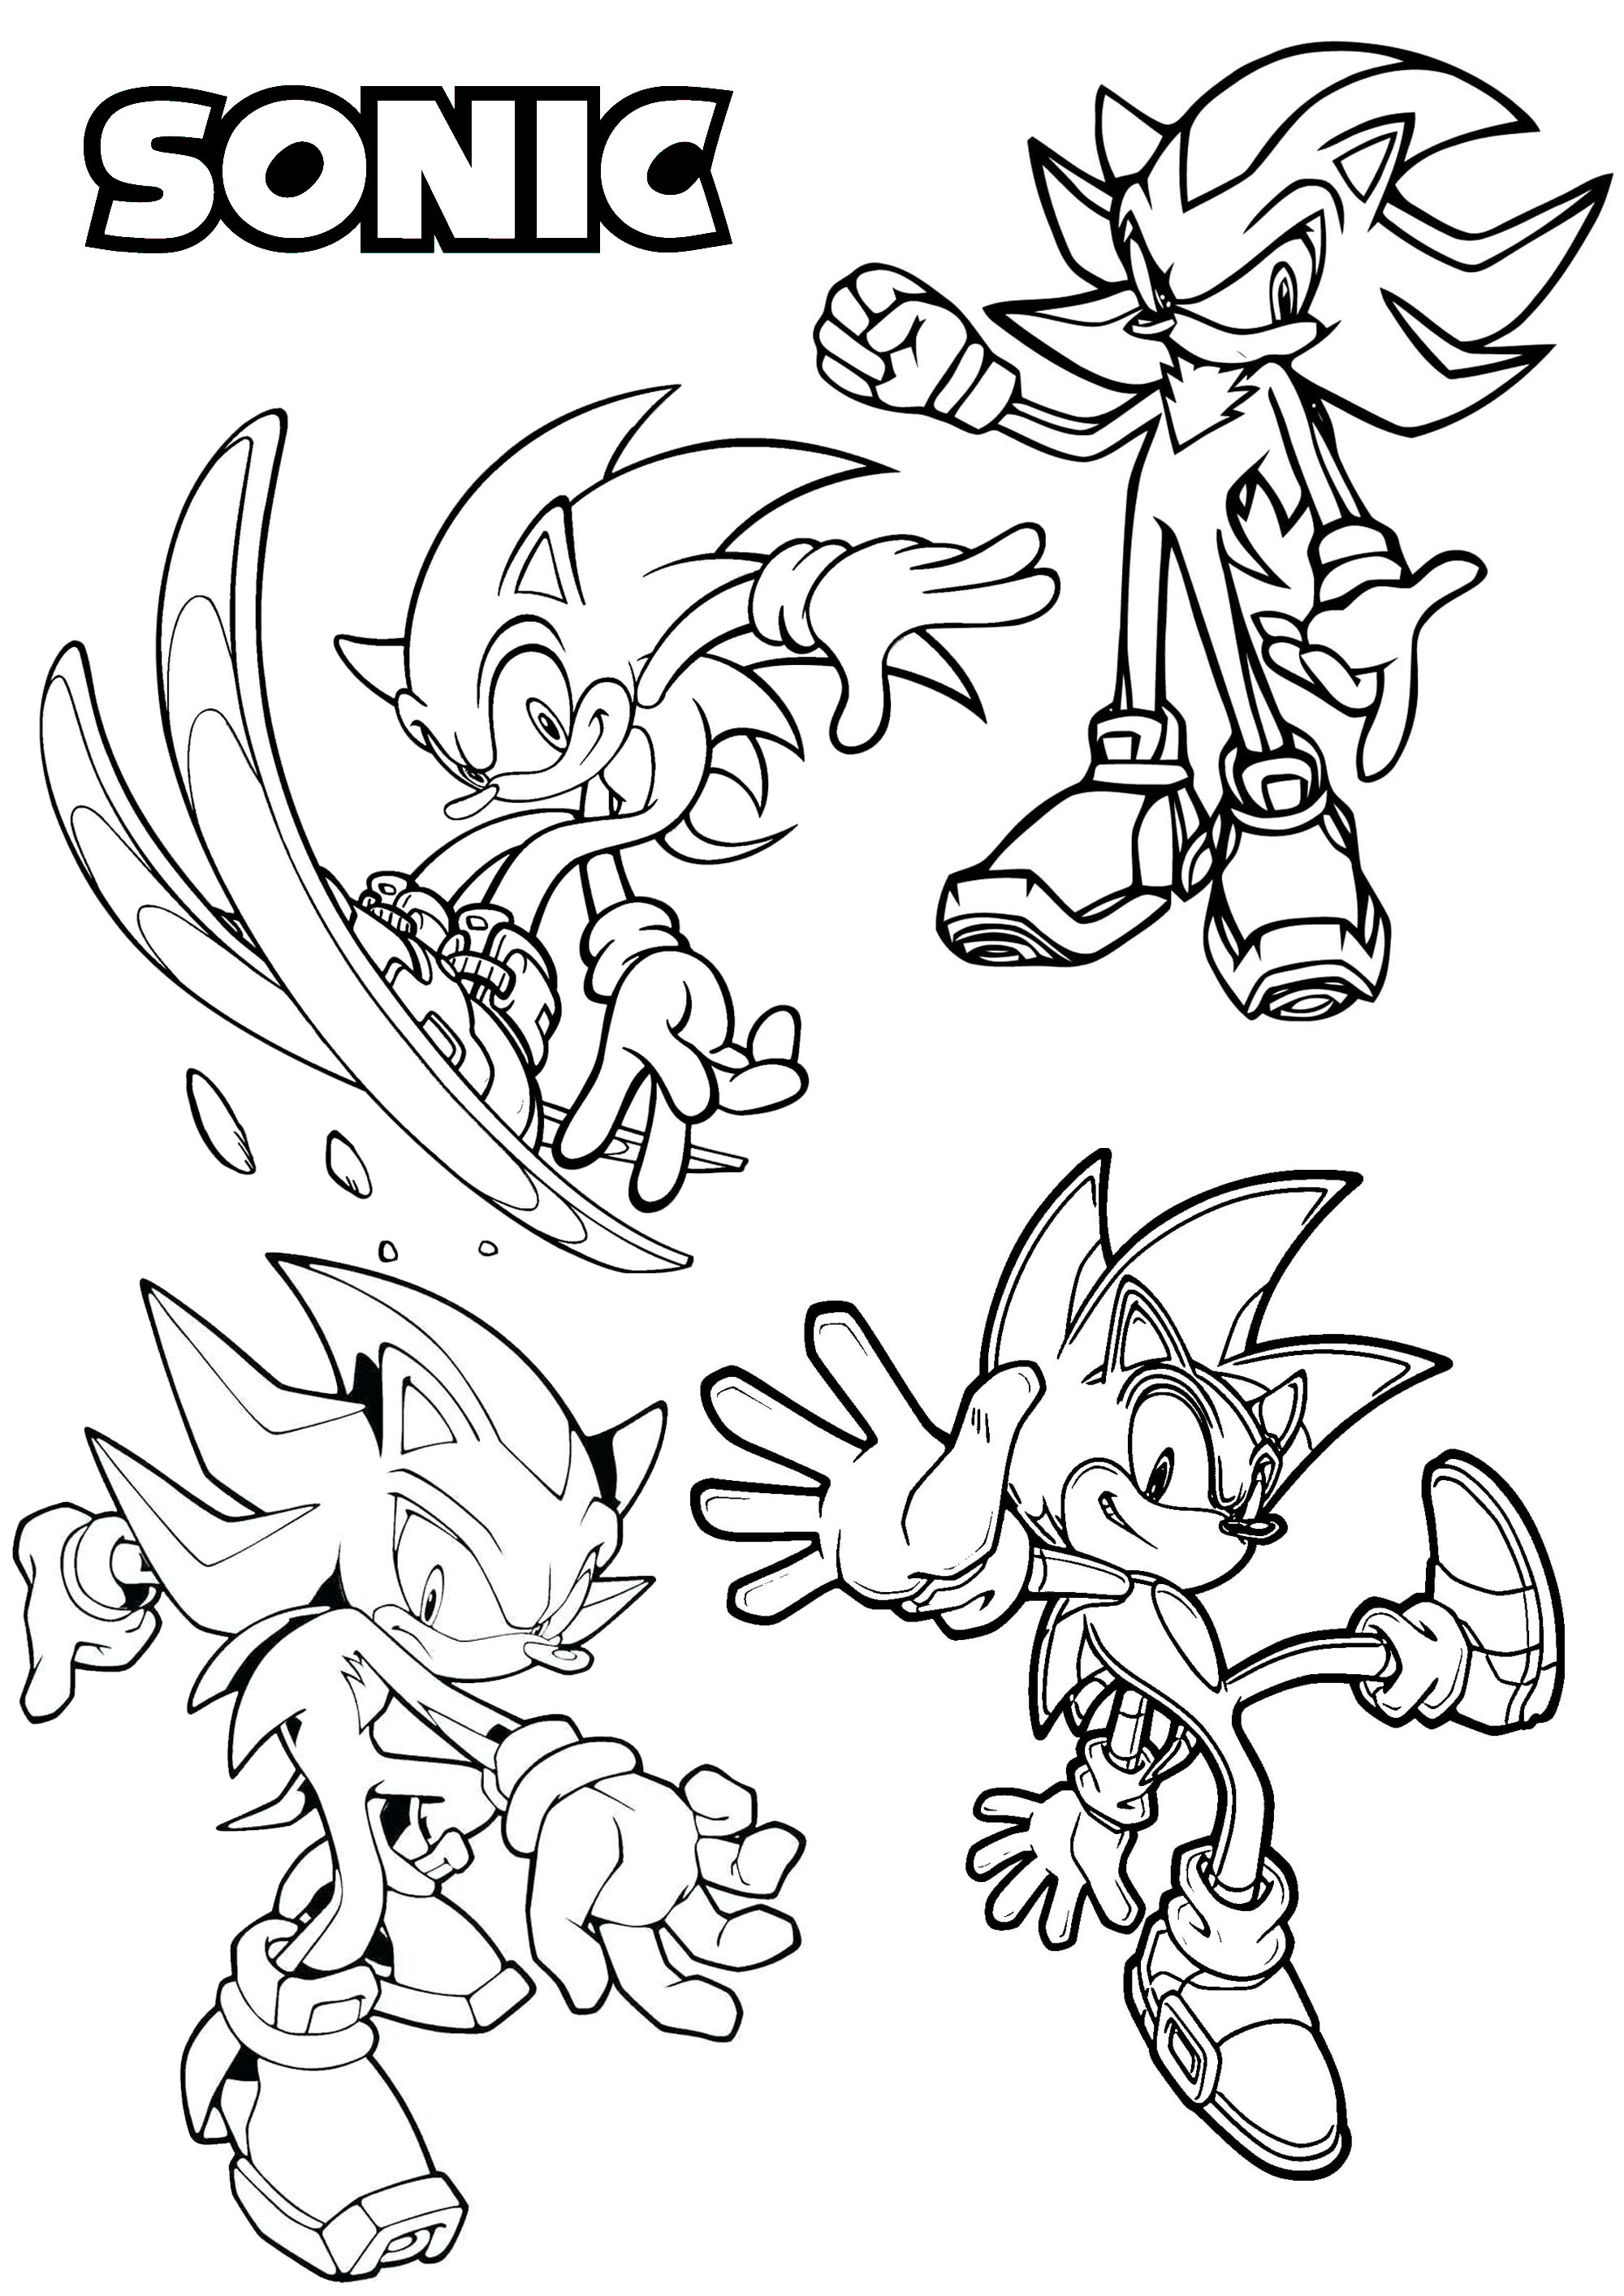 Vier verschiedene Versionen einer der berühmtesten Videospielfiguren, die in den 90er Jahren geschaffen wurden: Sonic the Hedgehog